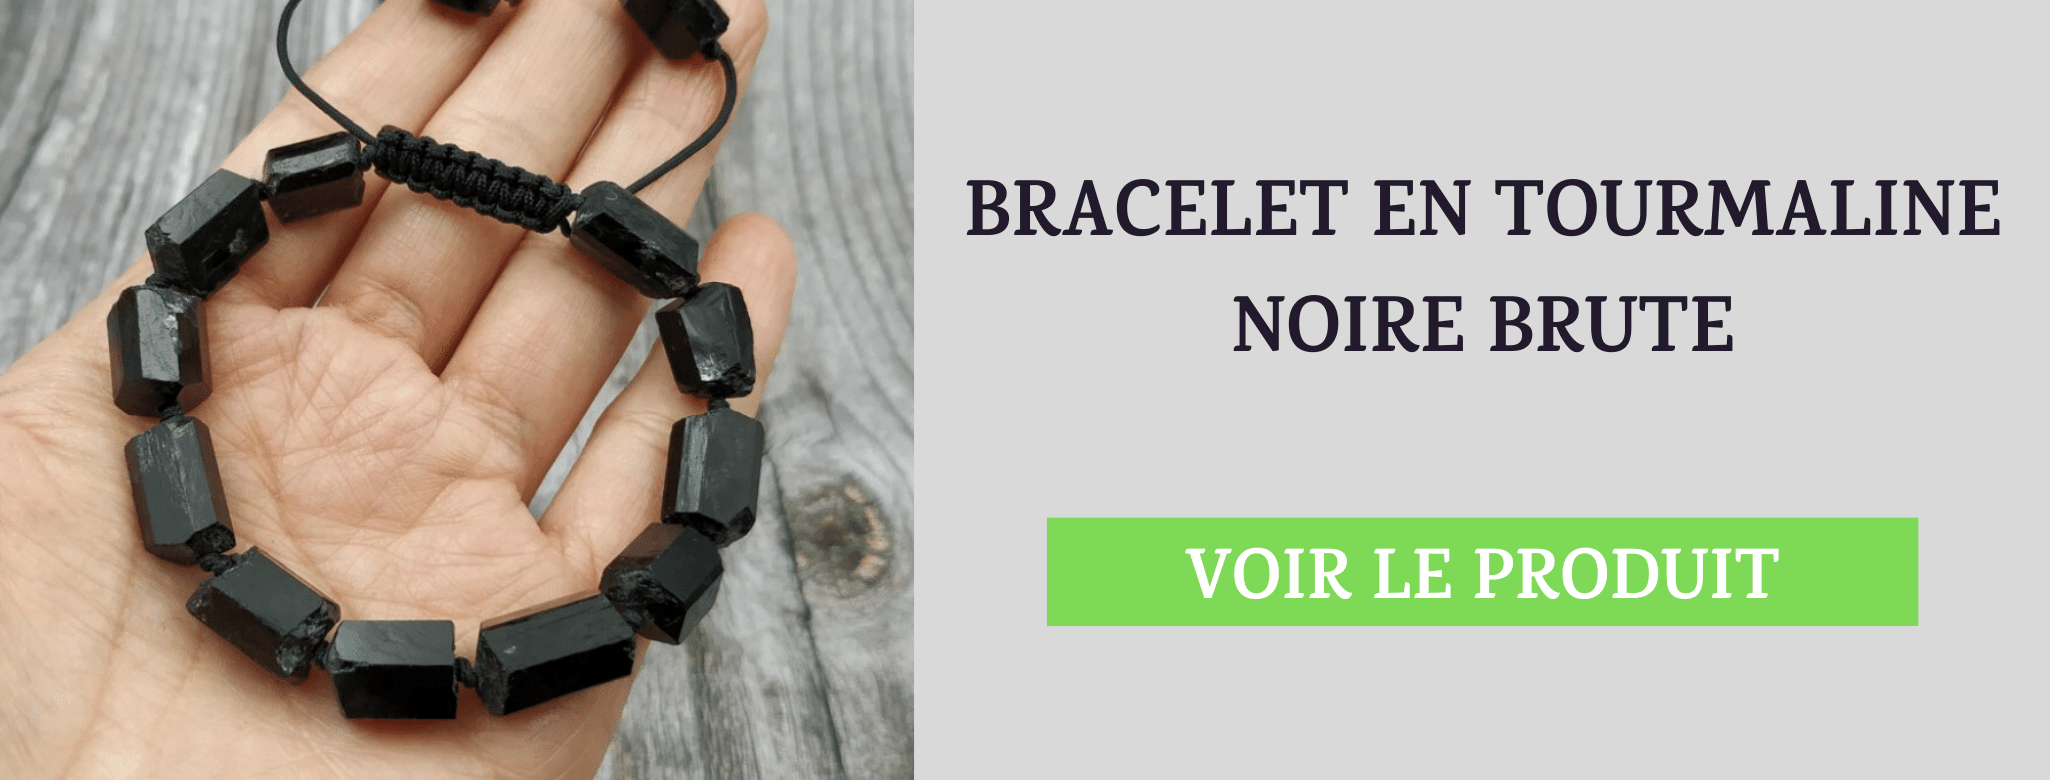 Bracelet Tourmaline Noire Brute